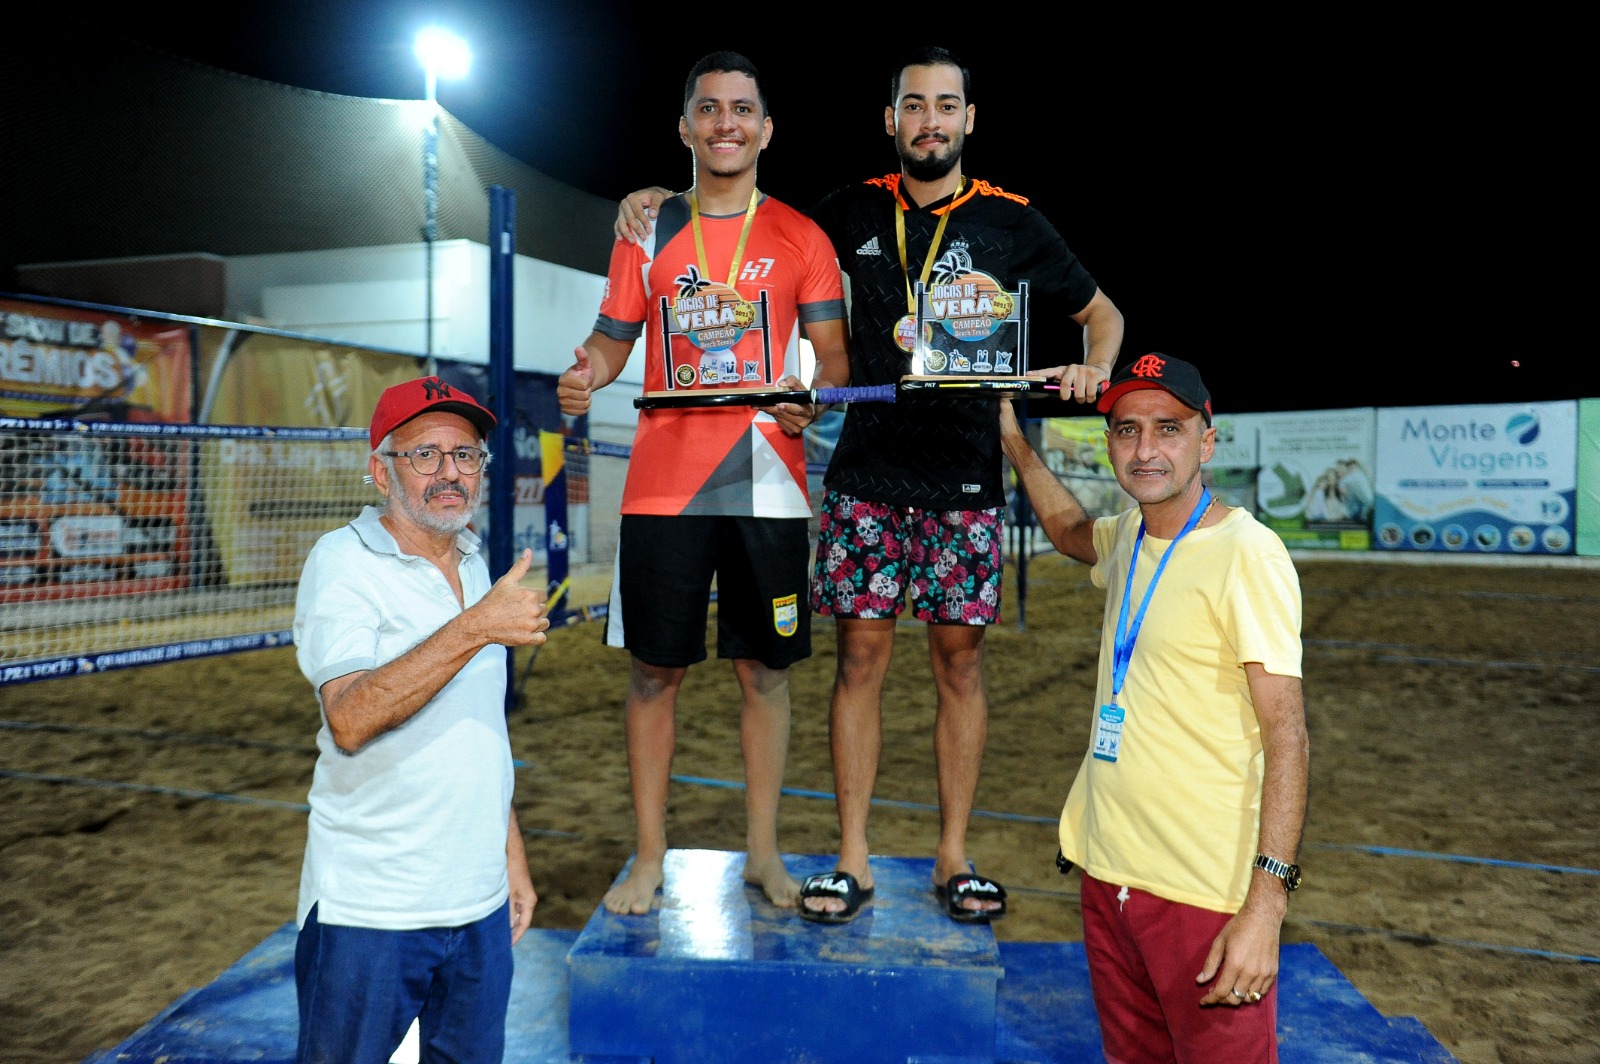 Jogos-de-Verao-29 Com participação recorde, competição de beach tennis encerra com chave de ouro a 1ª edição dos Jogos de Verão de Monteiro